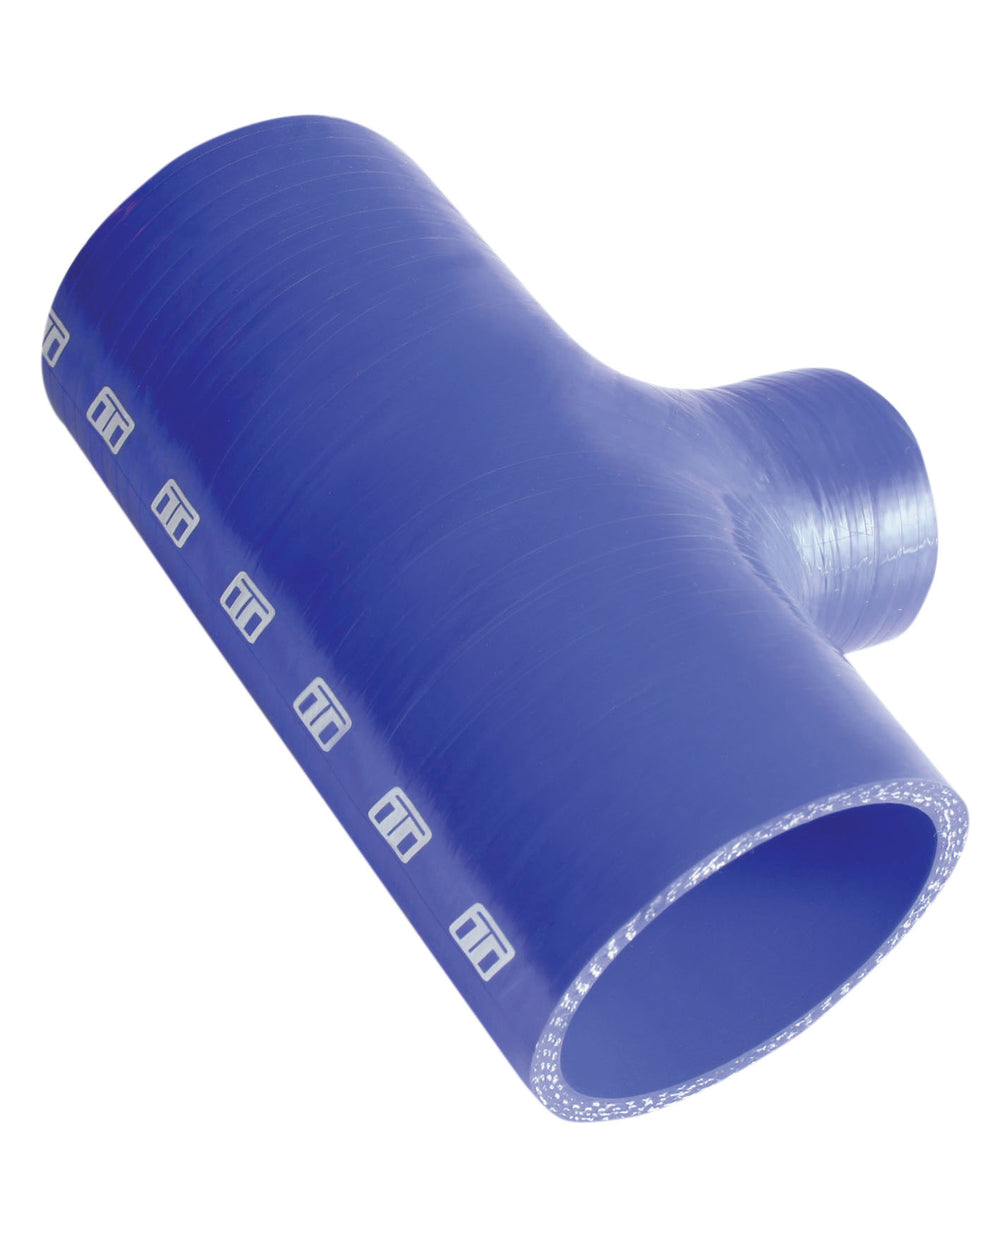 Turbosmart Intercooler Hose Kit (Hose Tee 2.50" ID 1.5" spout - Blue)